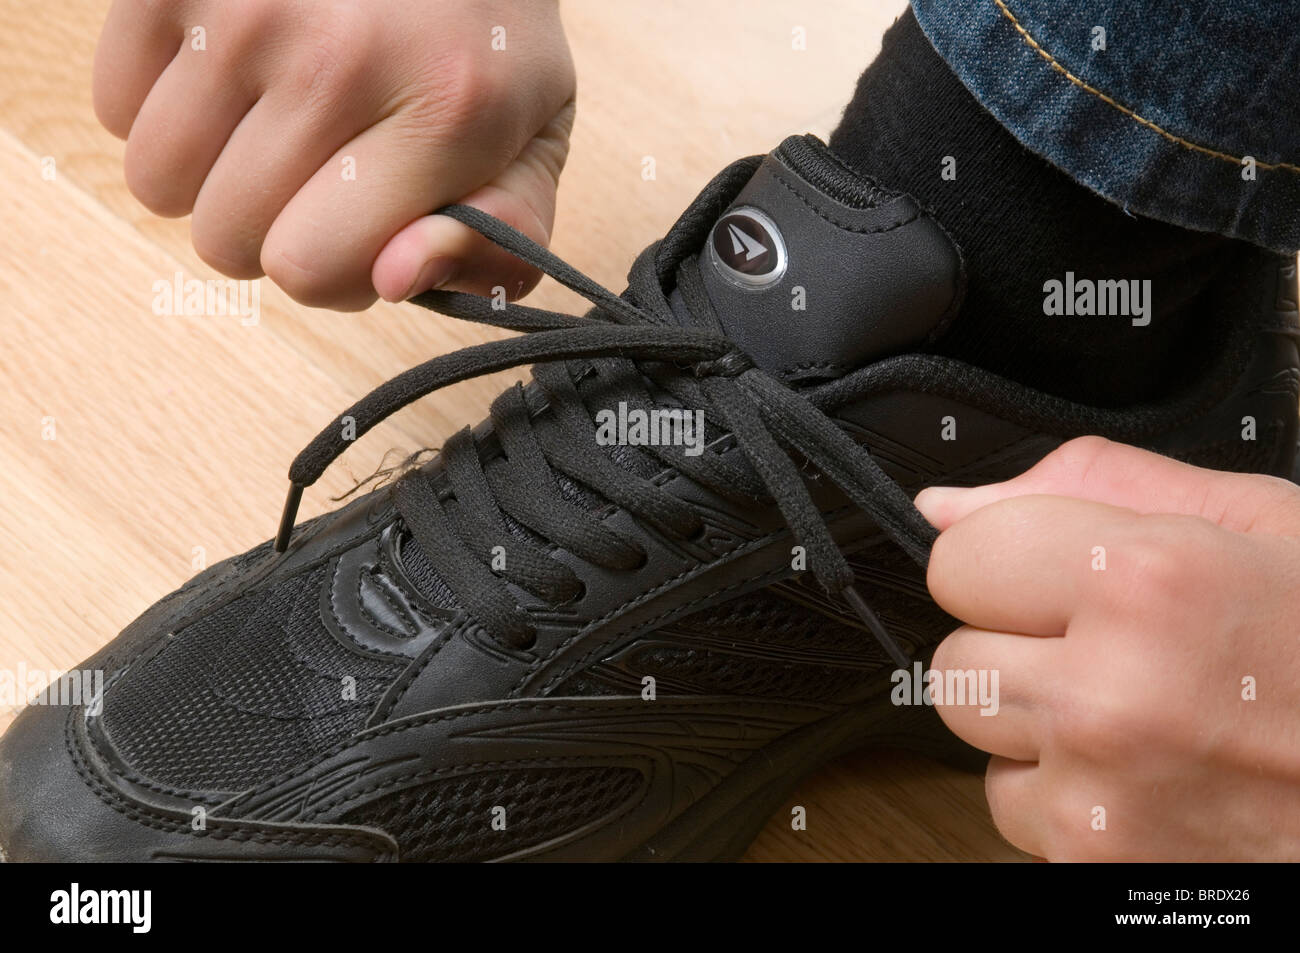 tying up shoelaces